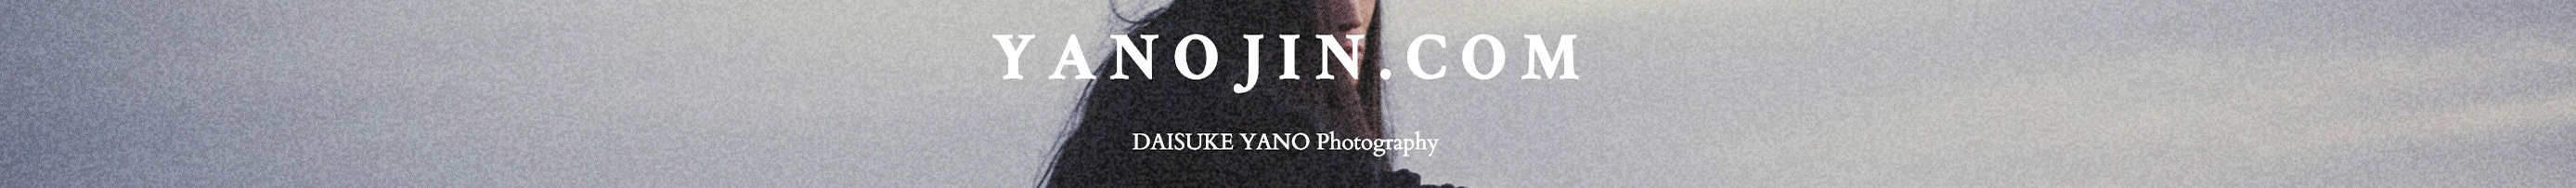 DAISUKE YANO's profile banner